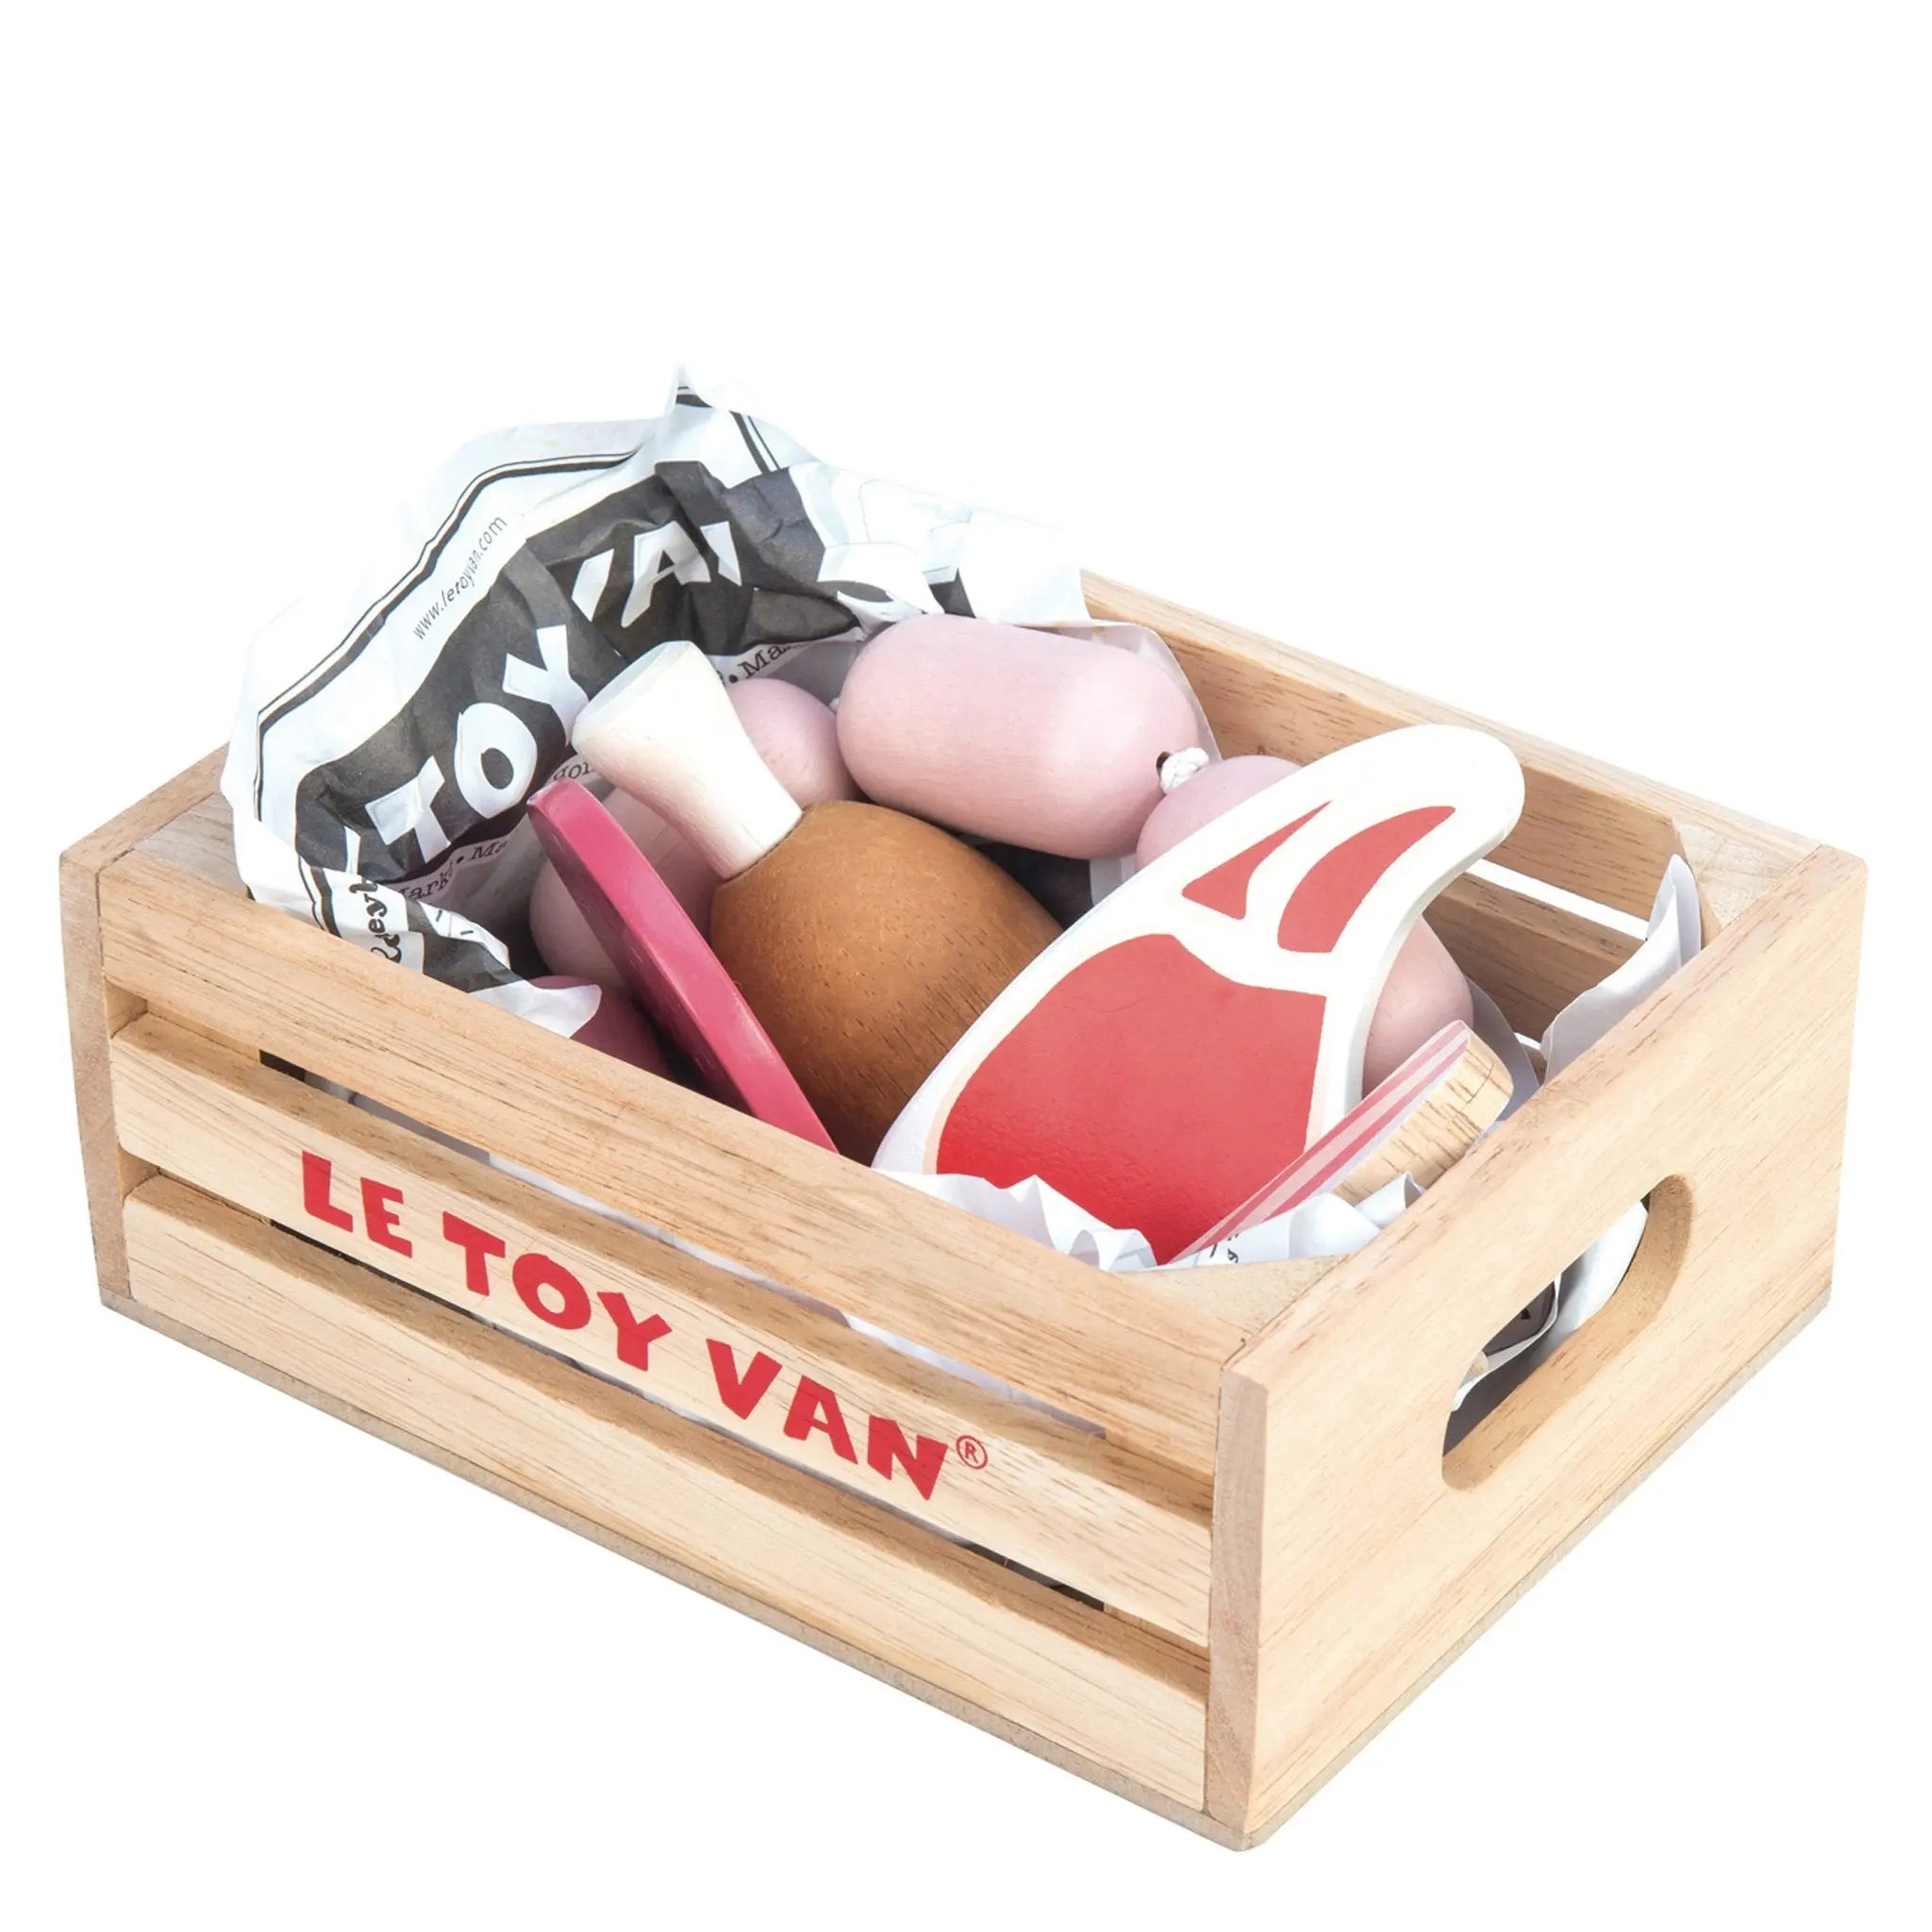 Market Meat Crate-Wooden toys & more-Le Toy Van-Blue Almonds-London-South Kensington